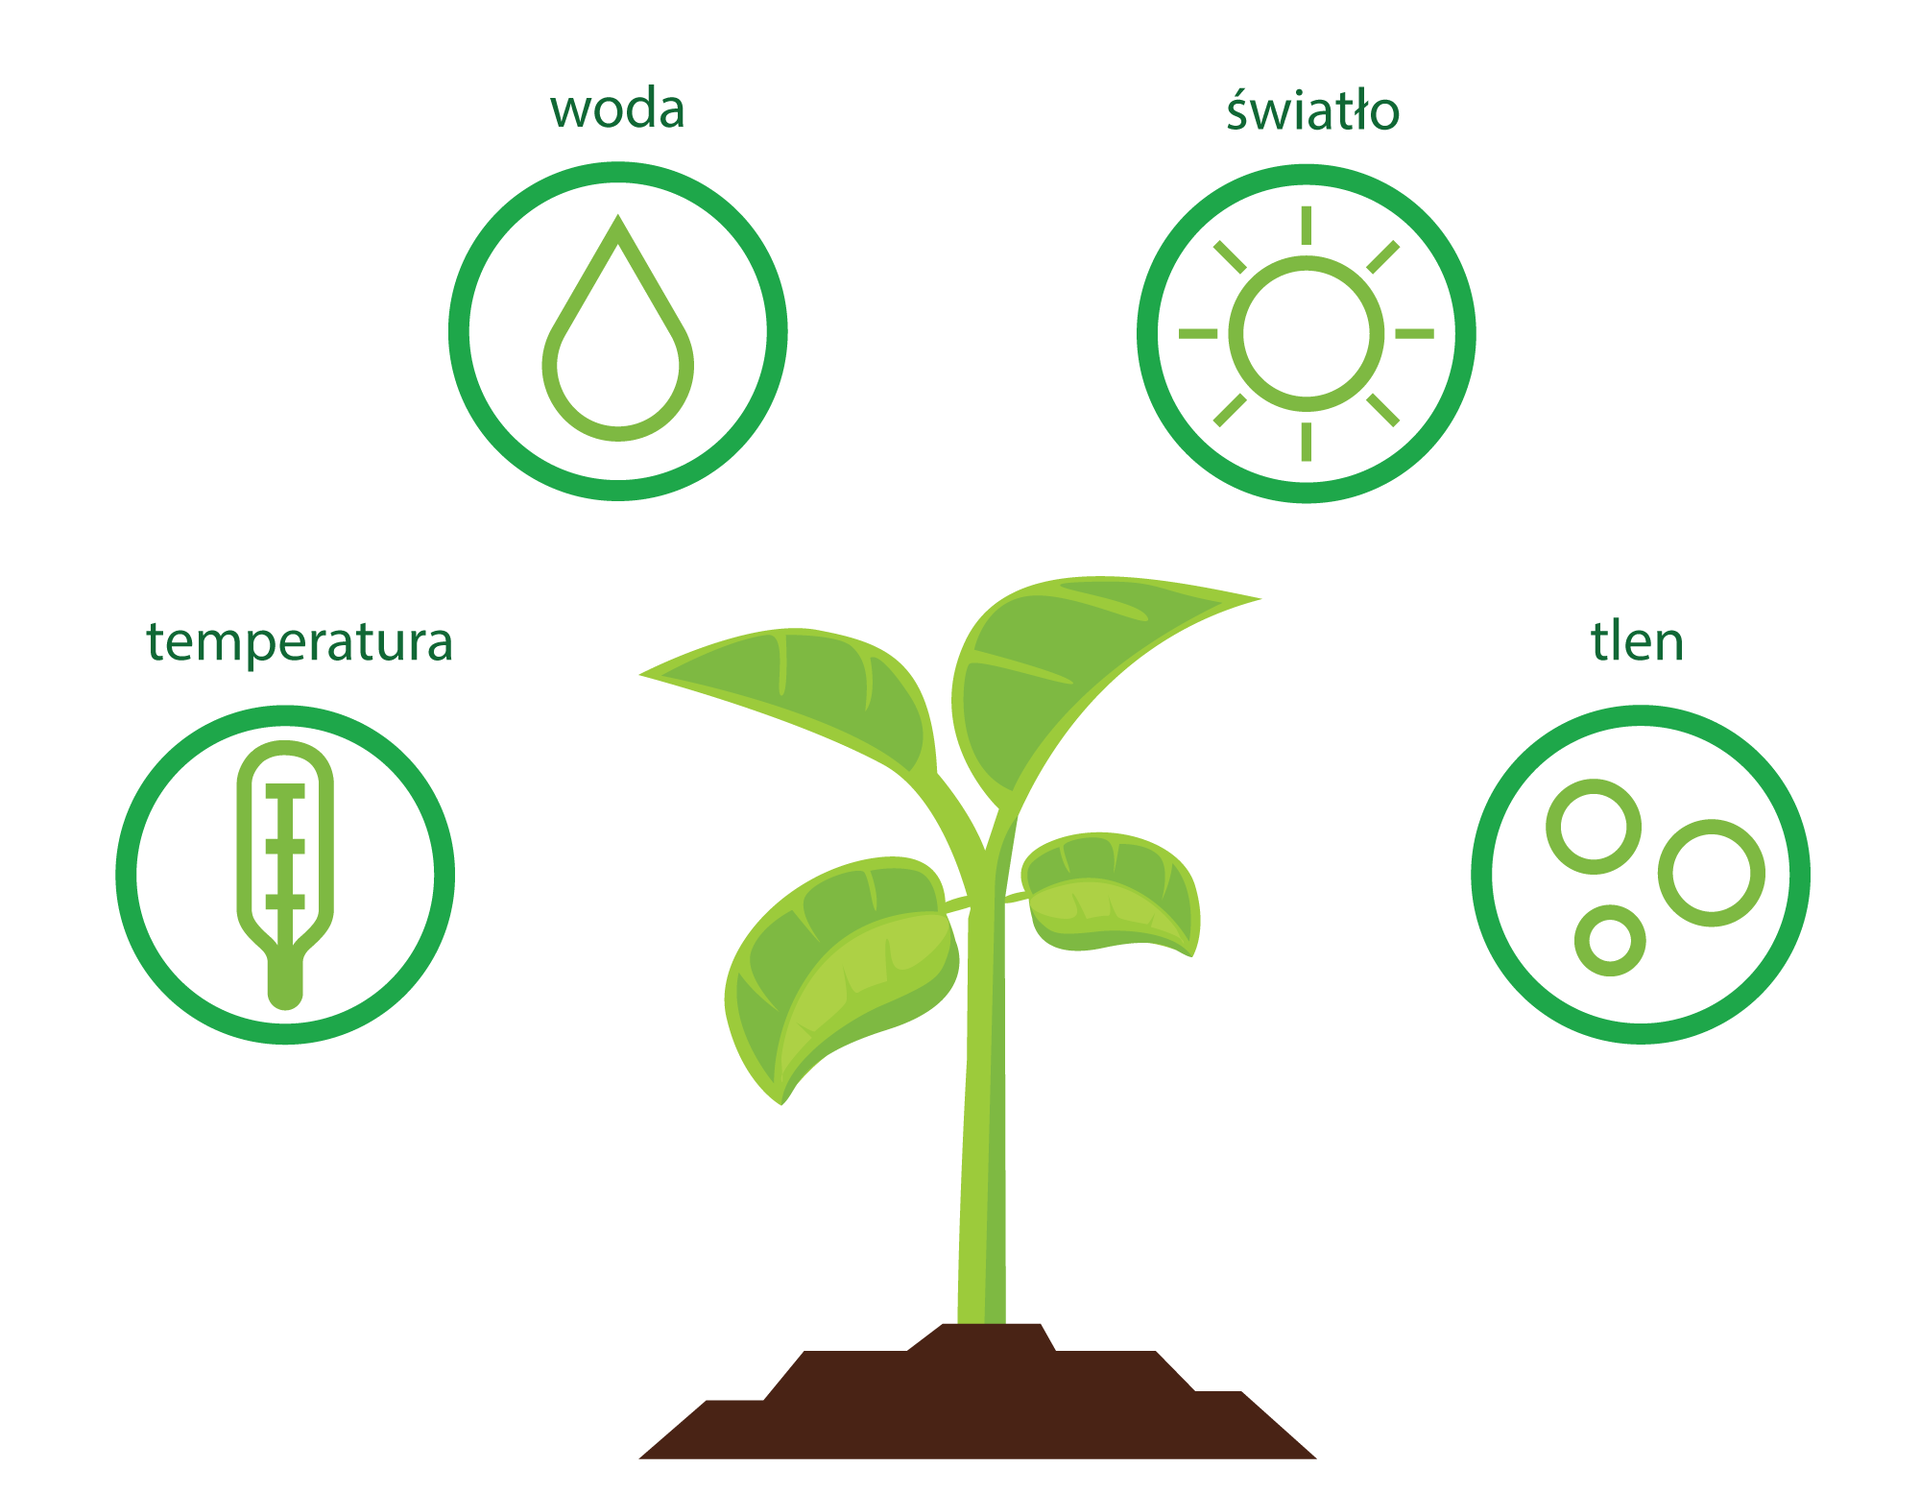 Ilustracja przedstawia centralnie umieszczoną, młodą, jasnozieloną roślinę na brązowej glebie. Wokół niej w czterech zielonych kółkach znajdują się piktogramy, oznaczające czynniki, które mają wpływ na kiełkowanie nasion. Są to: temperatura, woda, światło i tlen.